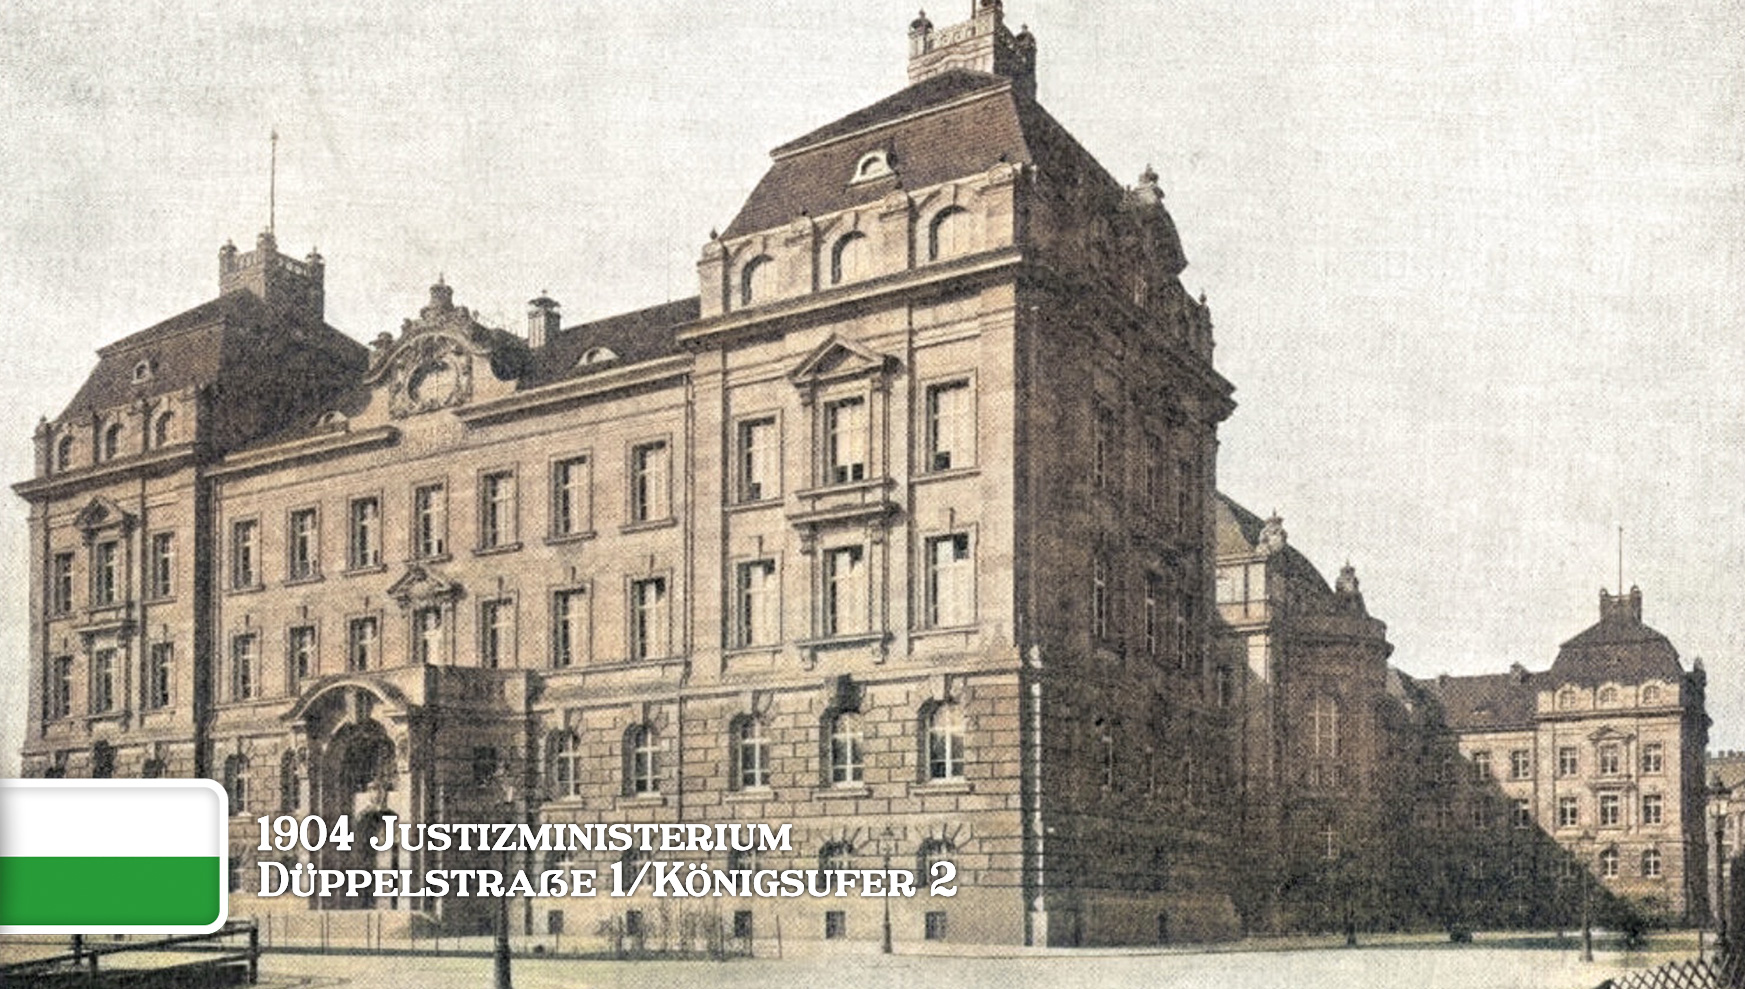 Justizministerium 1904